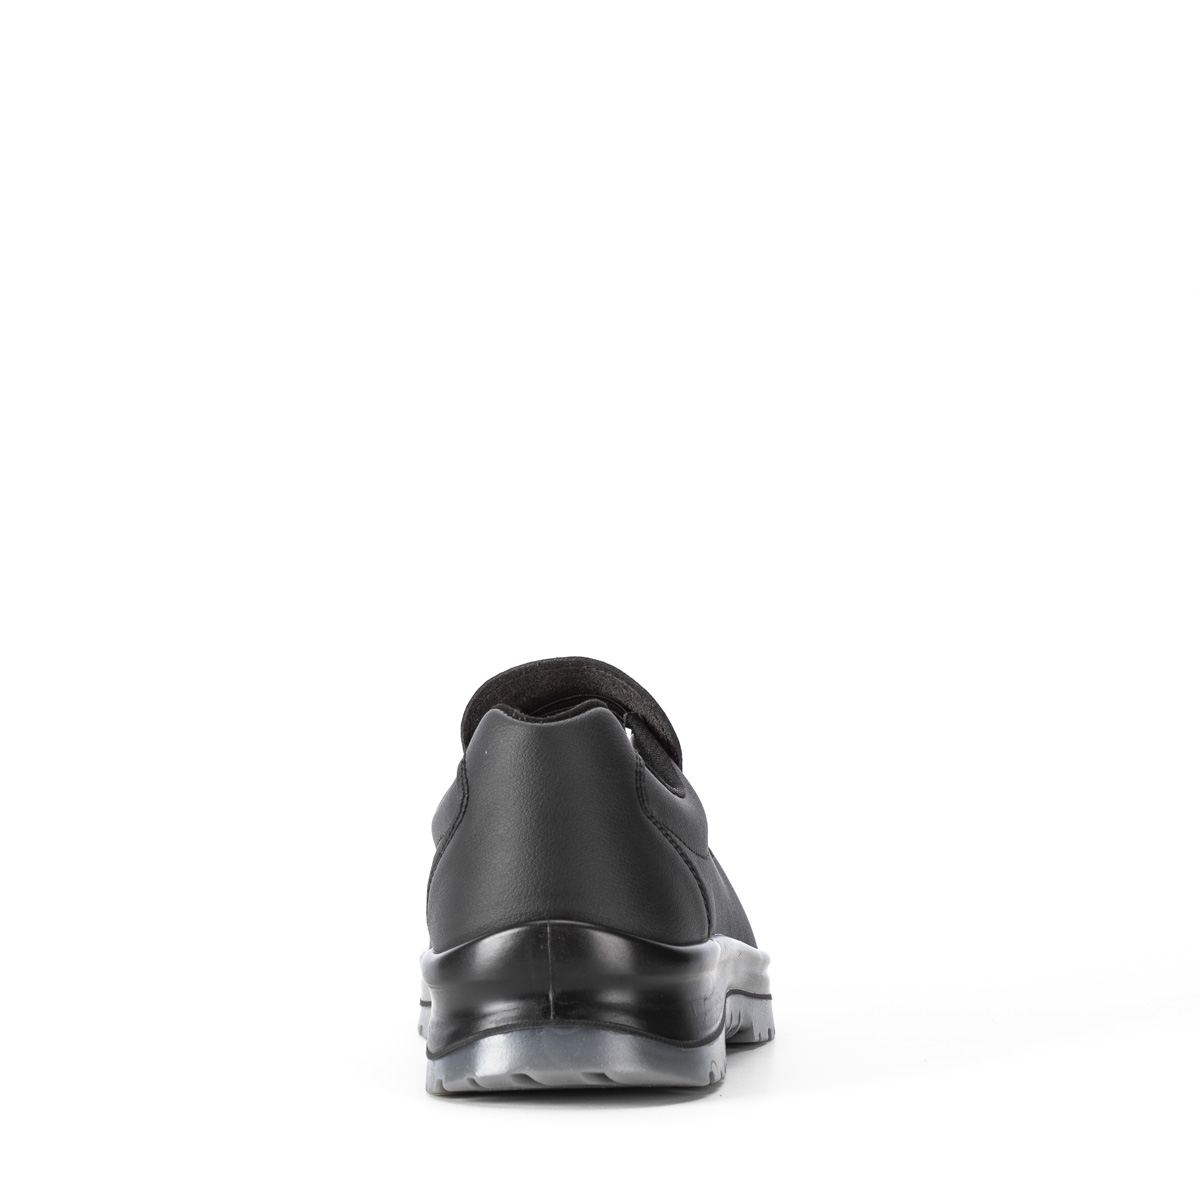 - Shoes modello classe SRC Peak S2 con di VENEZIA - 86203-01 Codice Sixton Chaussure Crystal protezione Safety